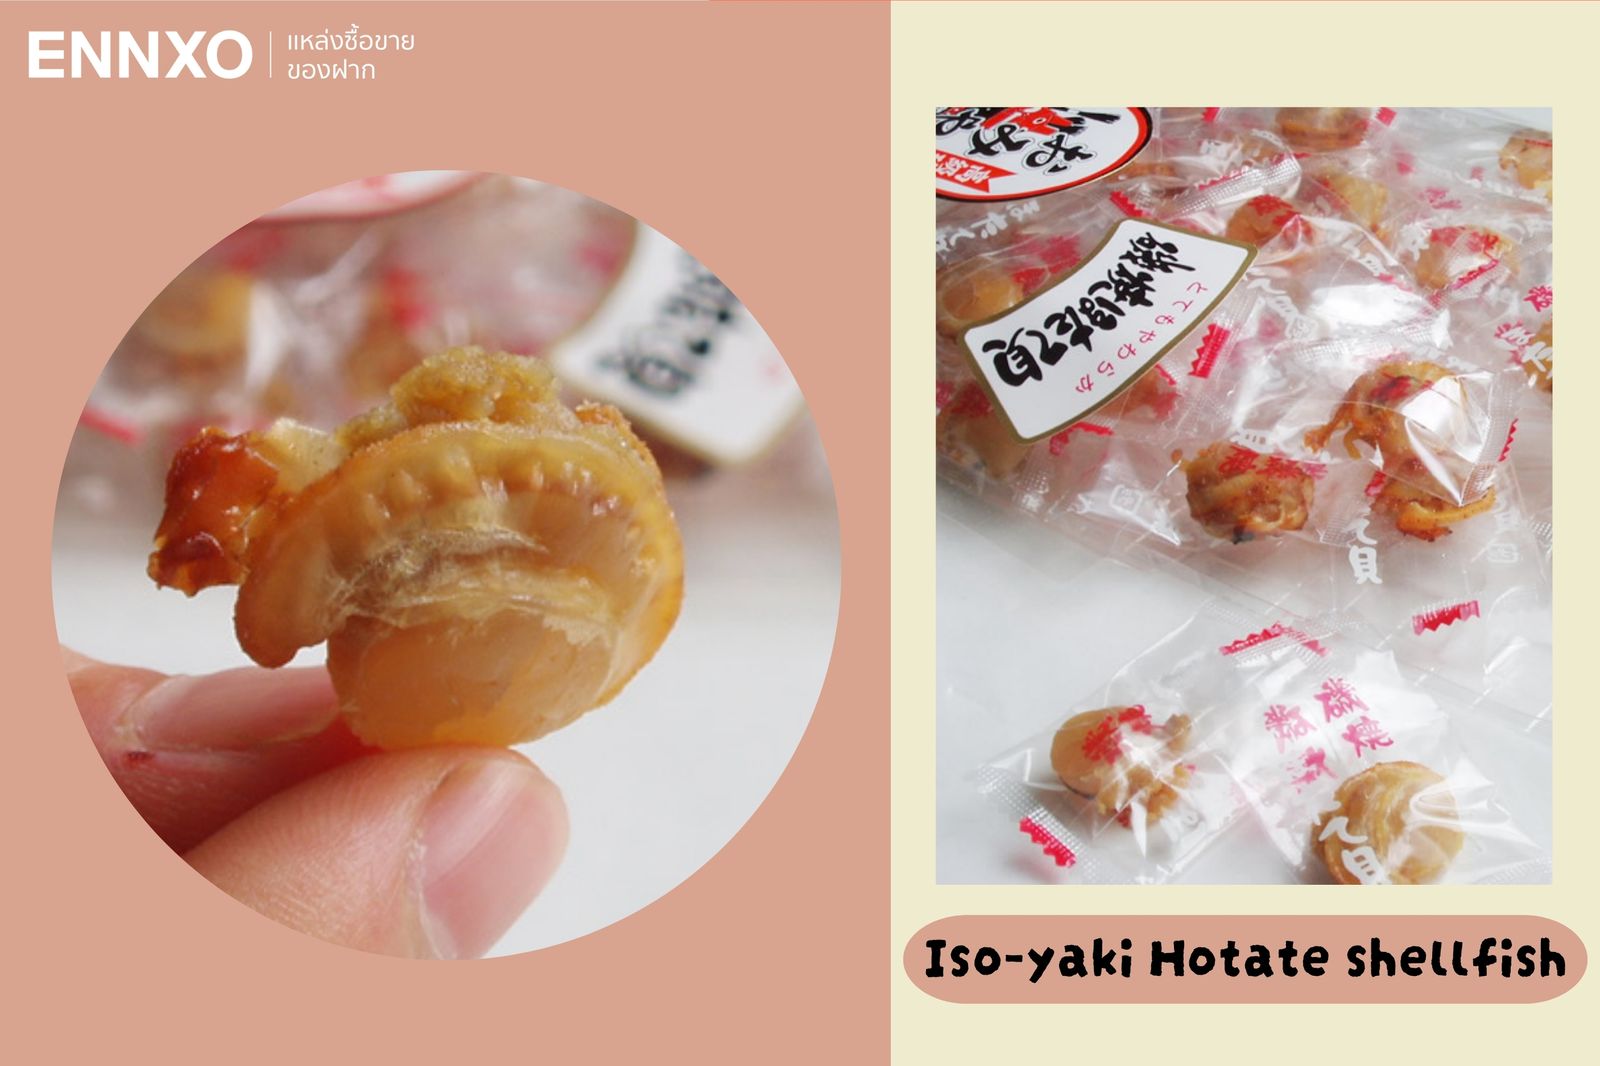 Iso-yaki Hotate shellfish หอยเชลล์โฮตาเตะย่างซอสสูตรพิเศษ หอม อร่อย เคี้ยวเพลิน